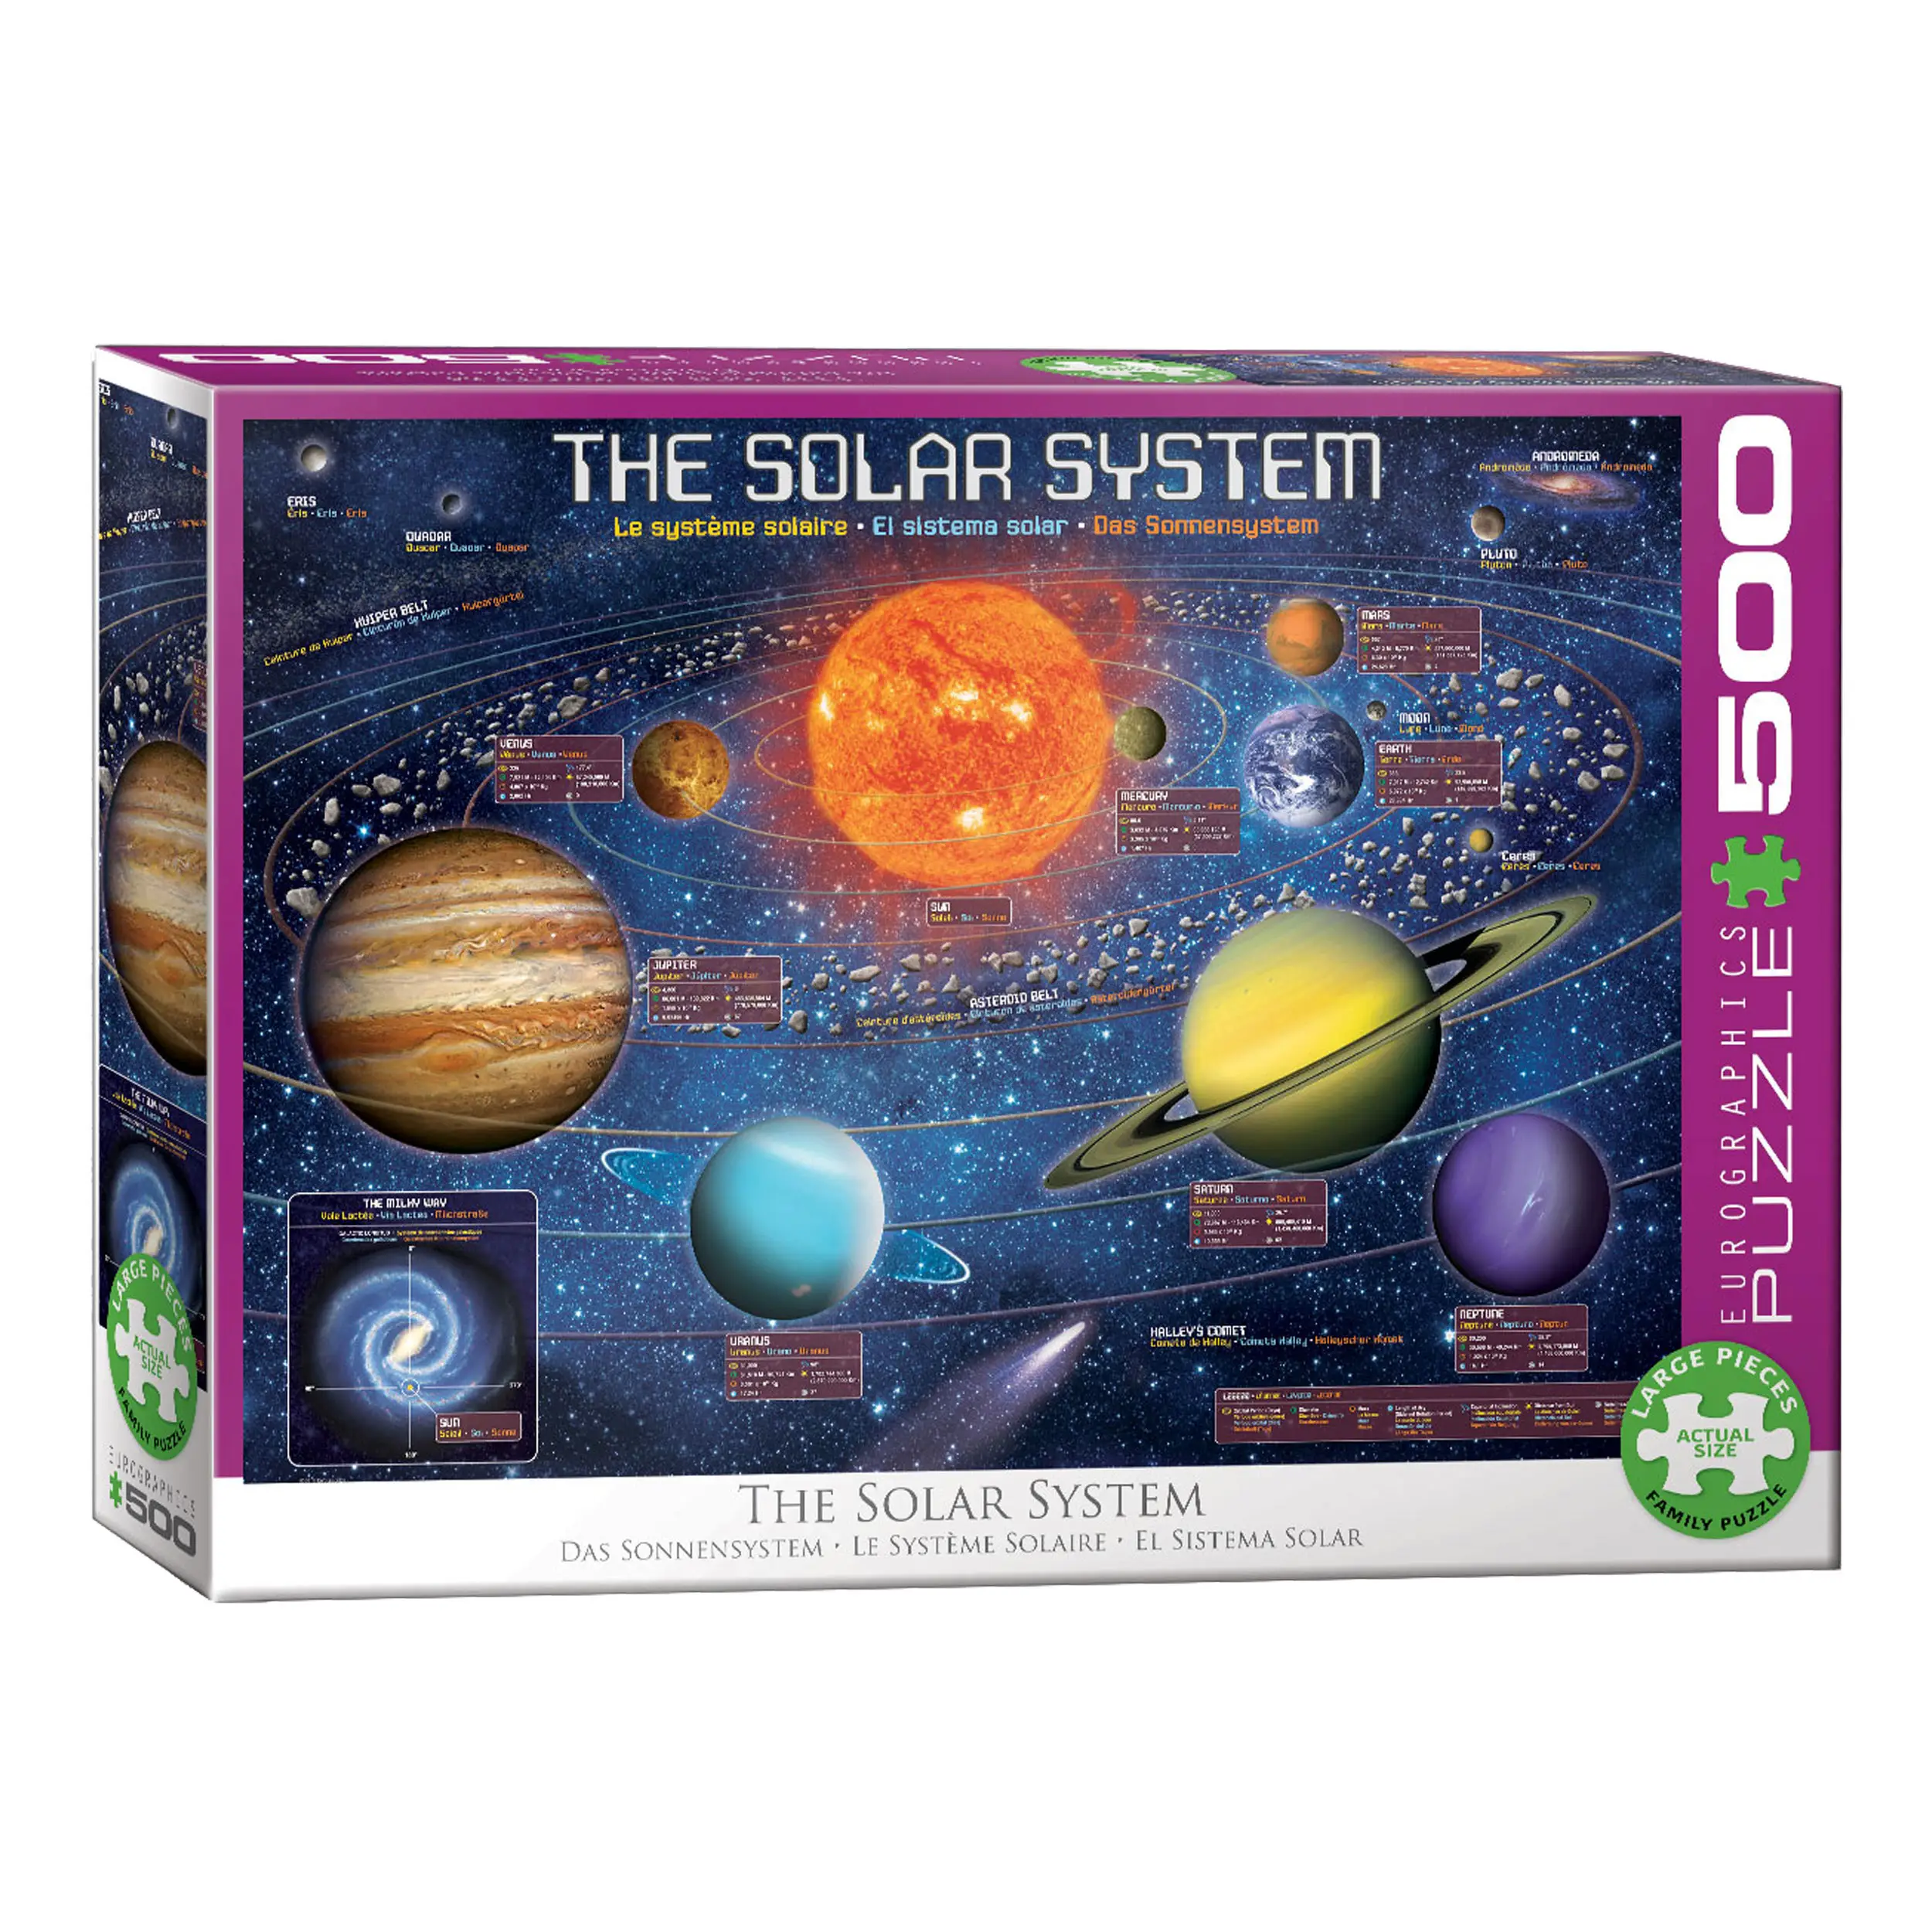 Puzzle Das Sonnensystem illustriert